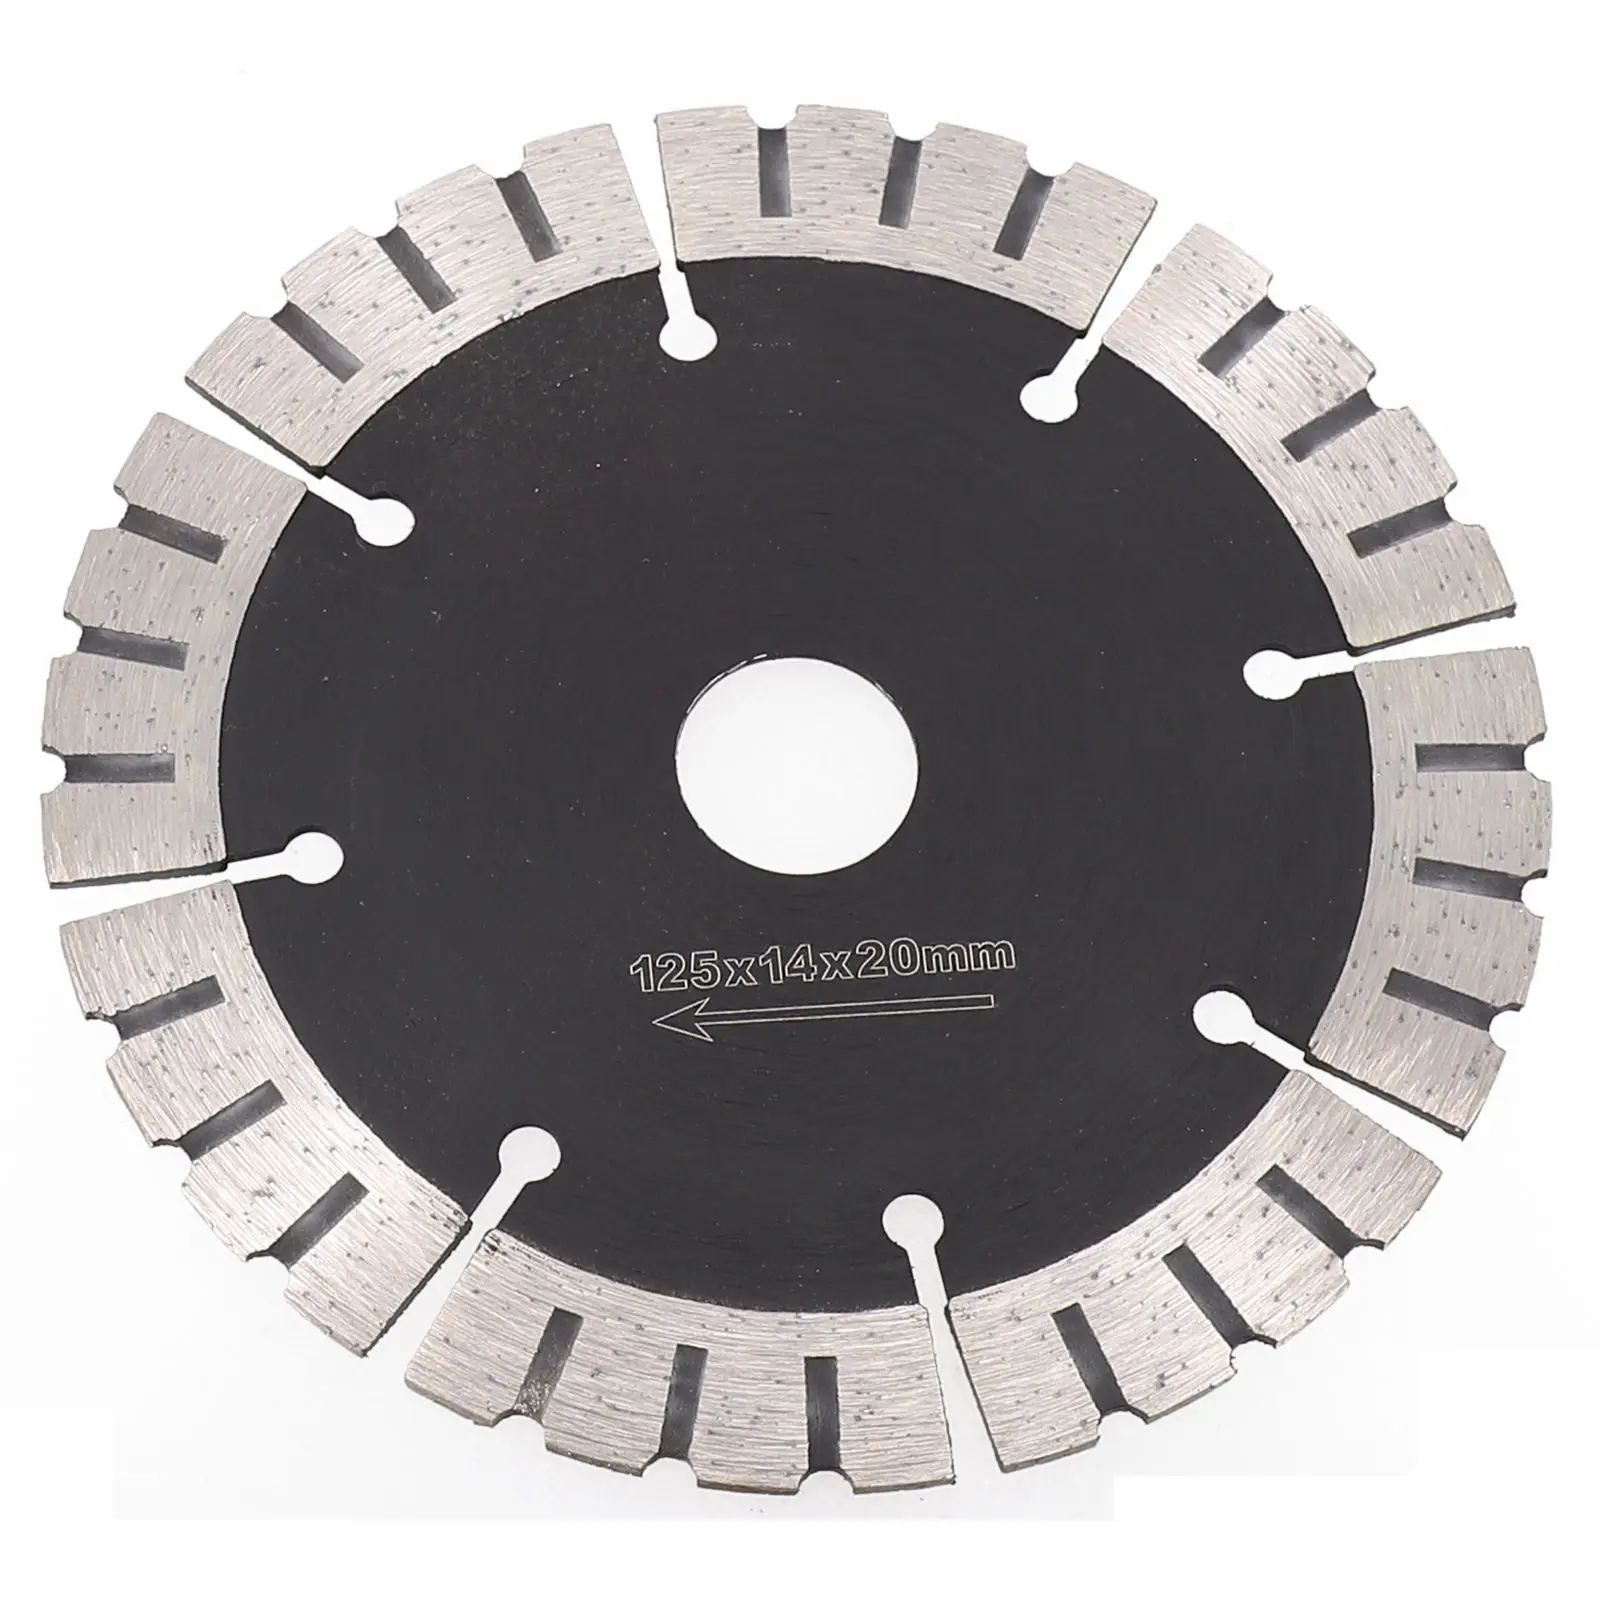 

Алмазный режущий диск, сегментное лезвие пилы, отверстие 125 мм 20 мм для бетона, мрамора, керамики, режущий угловой шлифовальный инструмент, аксессуары